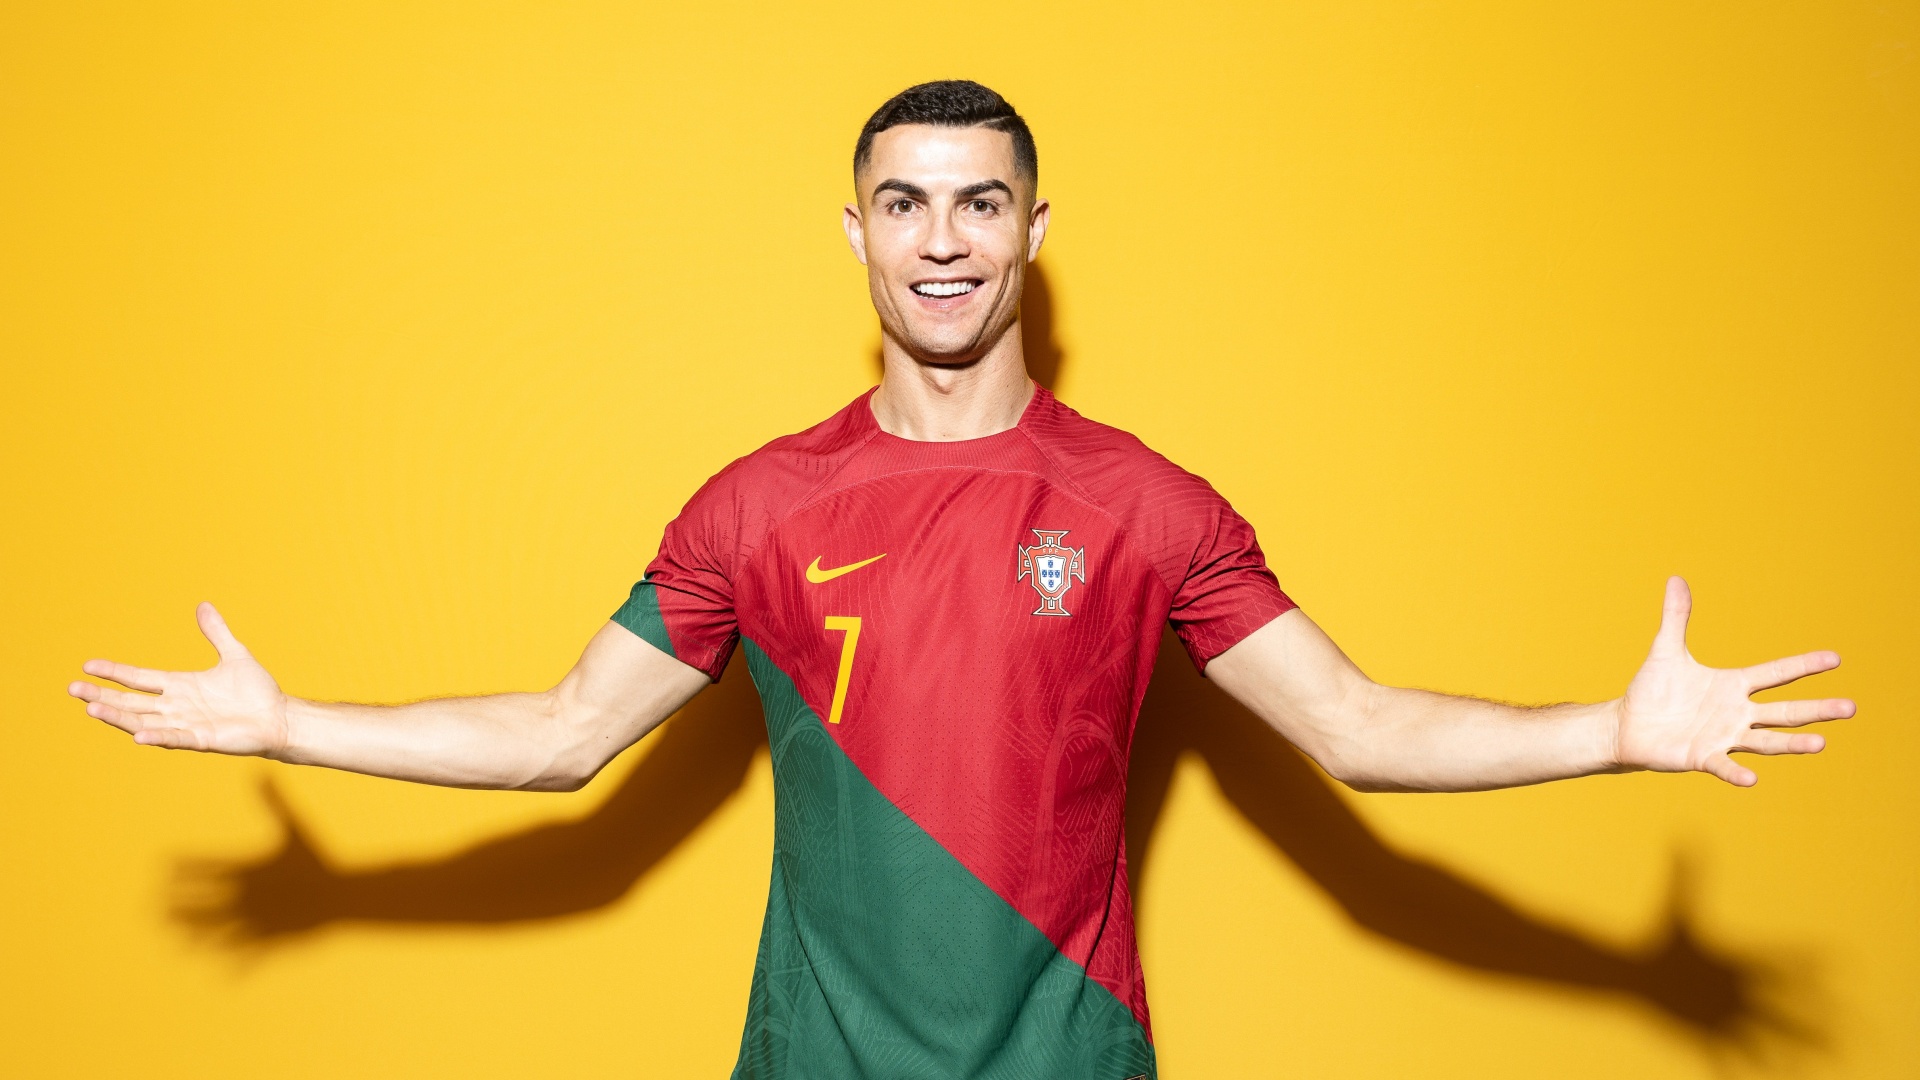 Cristiano Ronaldo, Wallpaper, 4K, Sports: Tận hưởng trọn vẹn sự mạnh mẽ và tài năng của Cristiano Ronaldo với hình nền 4K cực sắc nét. Đặt làm wallpaper và thể hiện niềm đam mê bóng đá của mình một cách hoàn hảo.